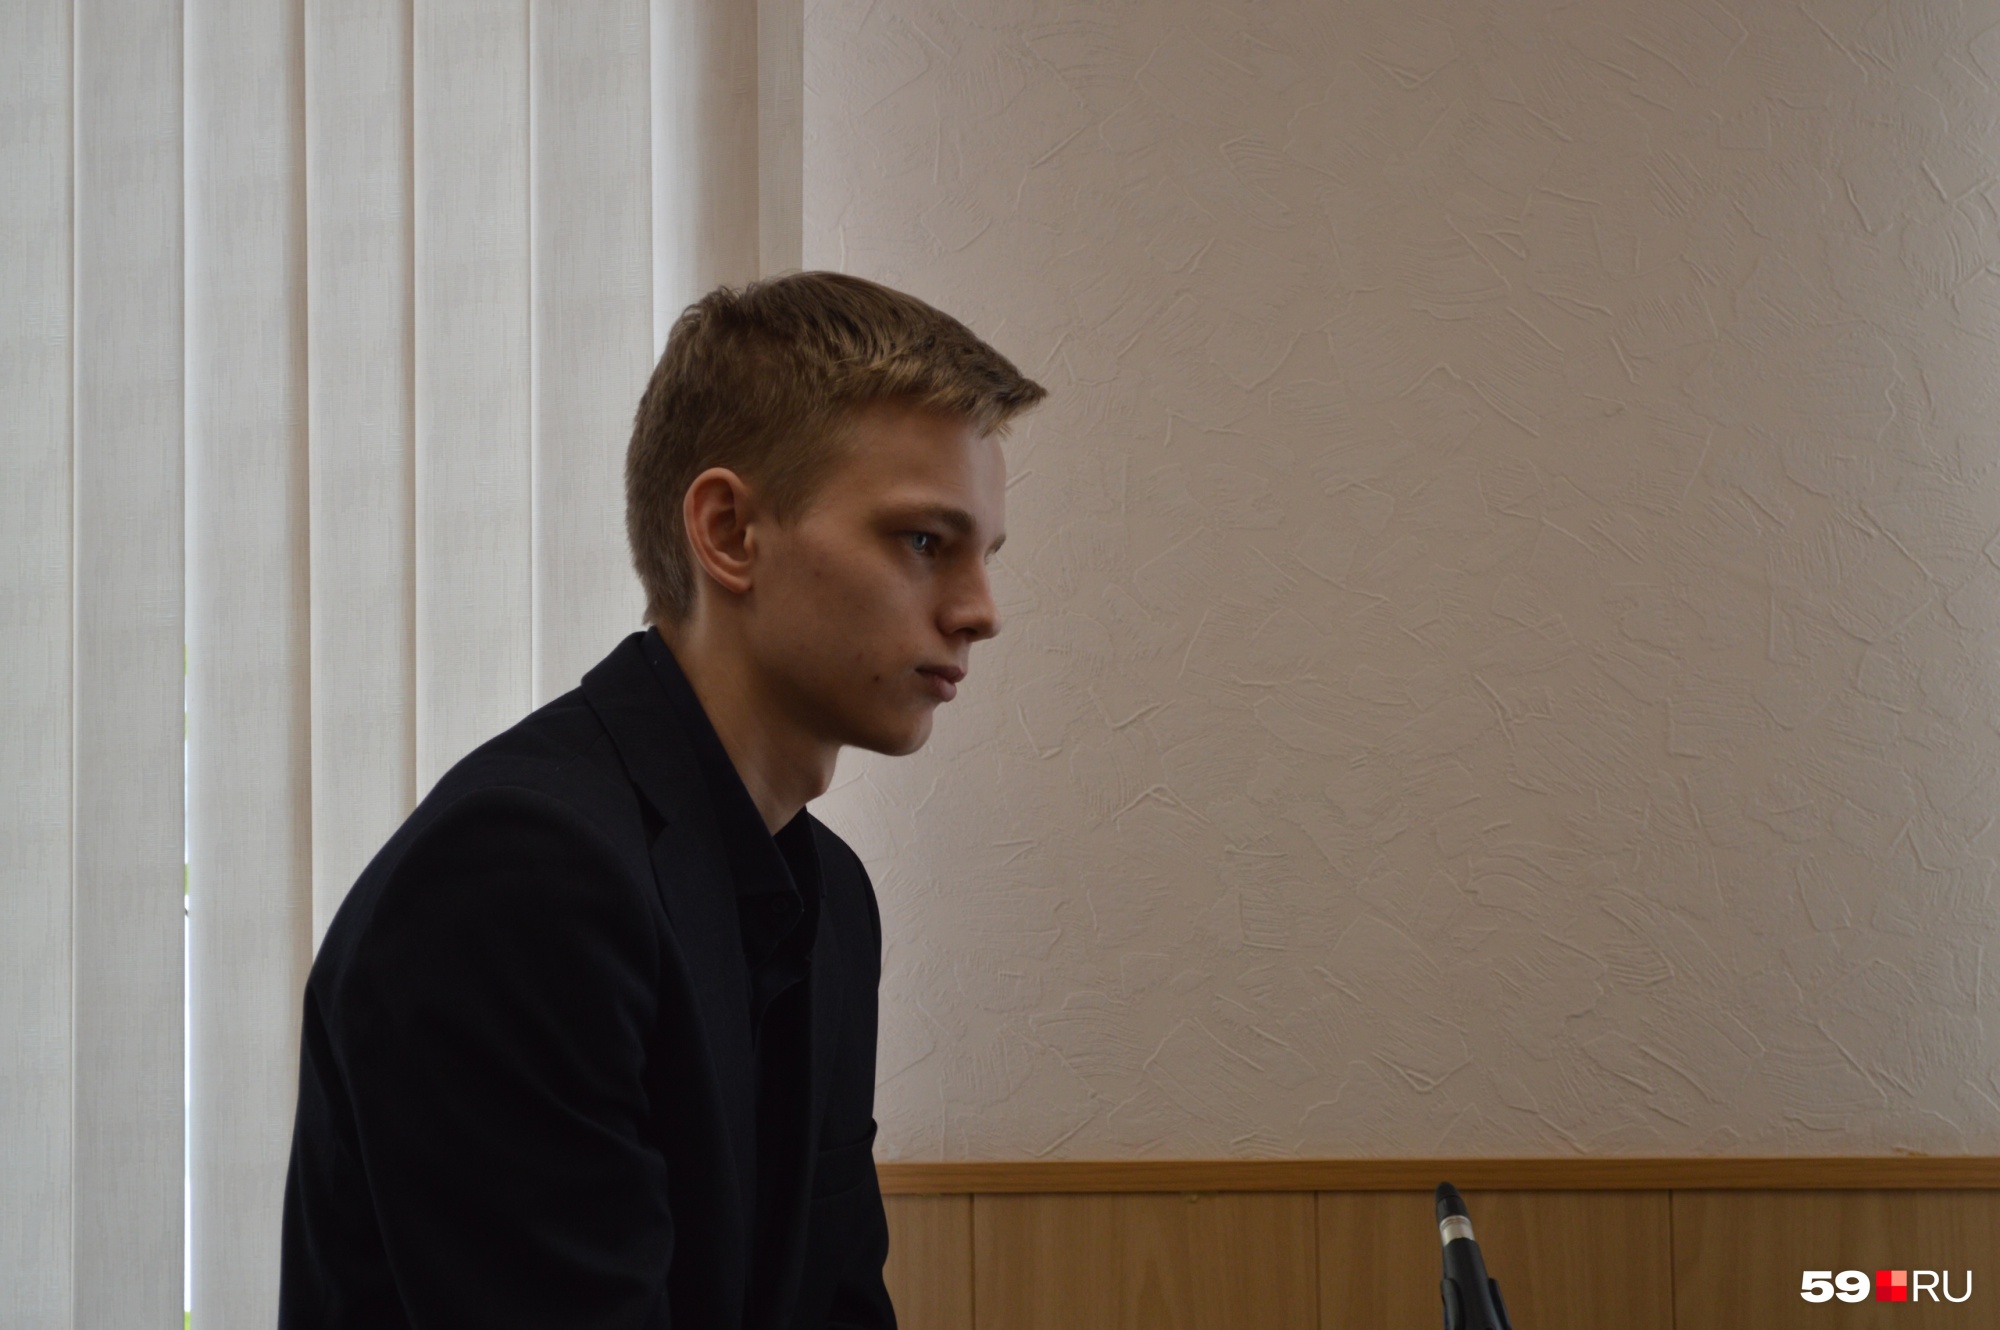 Студент Даниил Кибанов в момент аварии находился рядом со школьником. Он тоже получил травмы